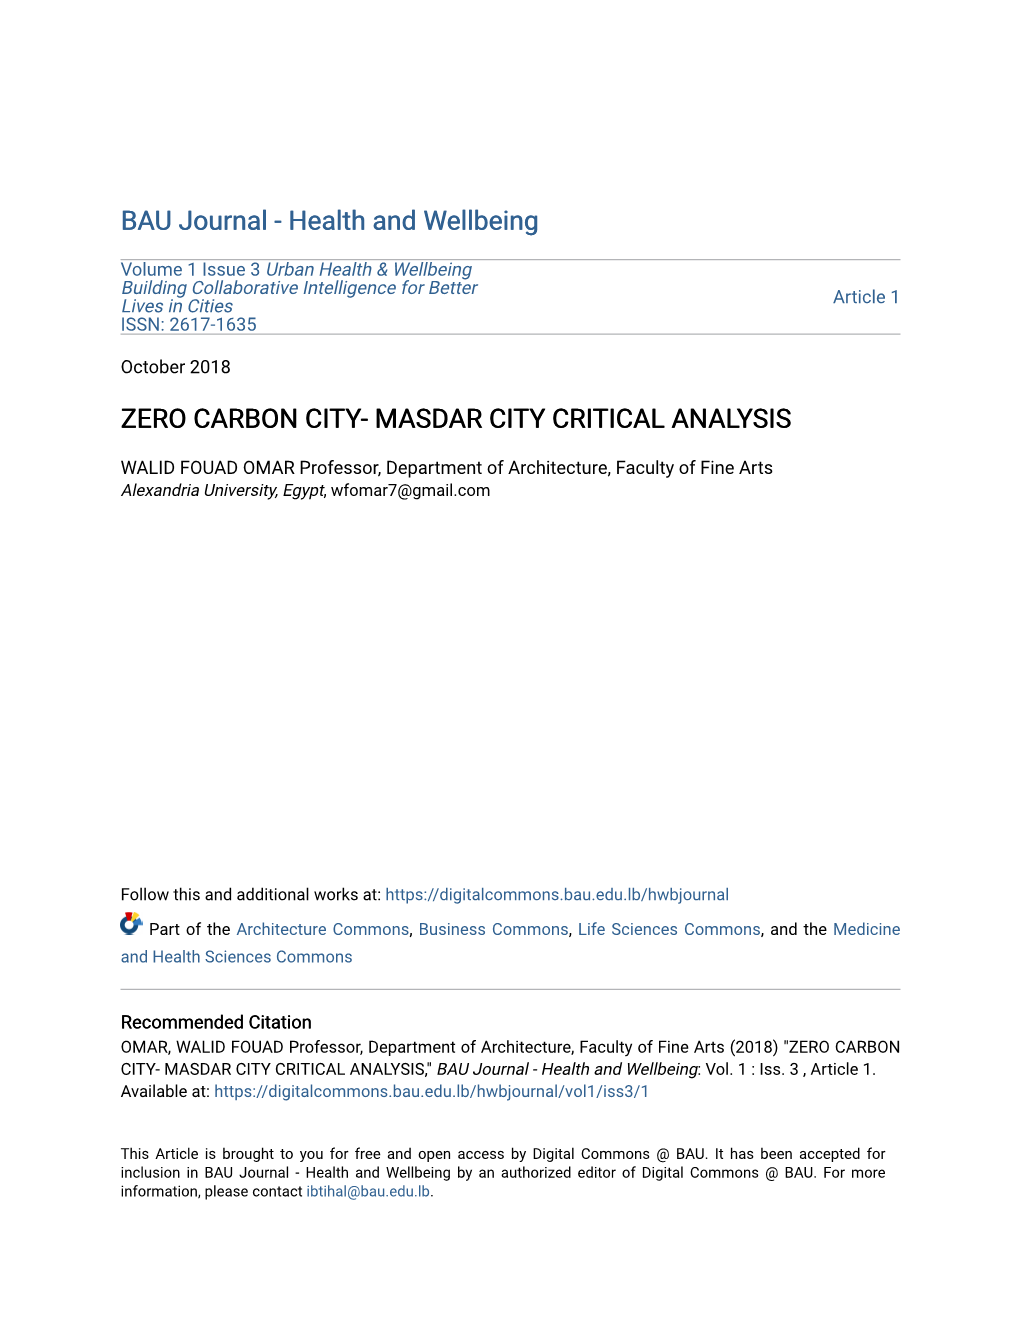 Zero Carbon City- Masdar City Critical Analysis